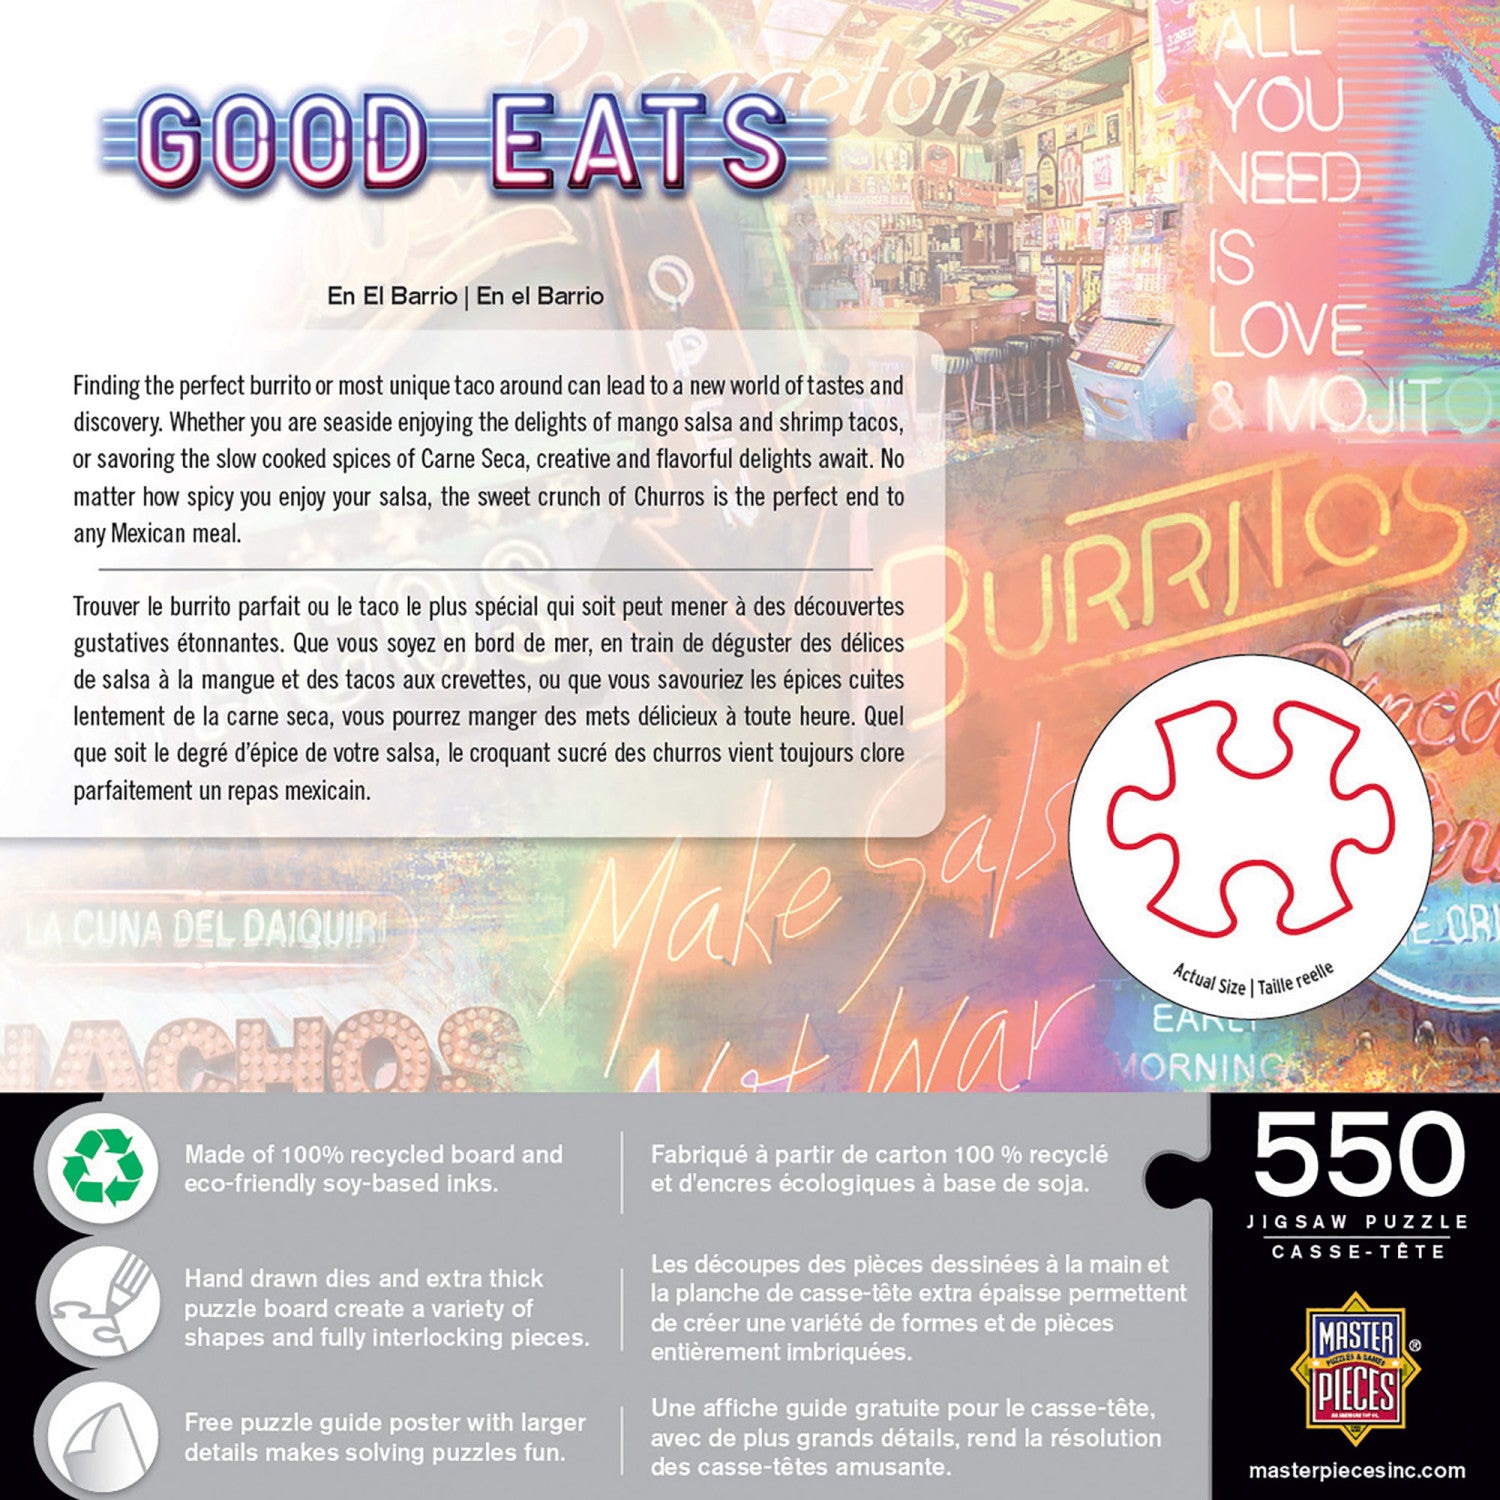 Good Eats - En El Barrio 550 Piece Jigsaw Puzzle